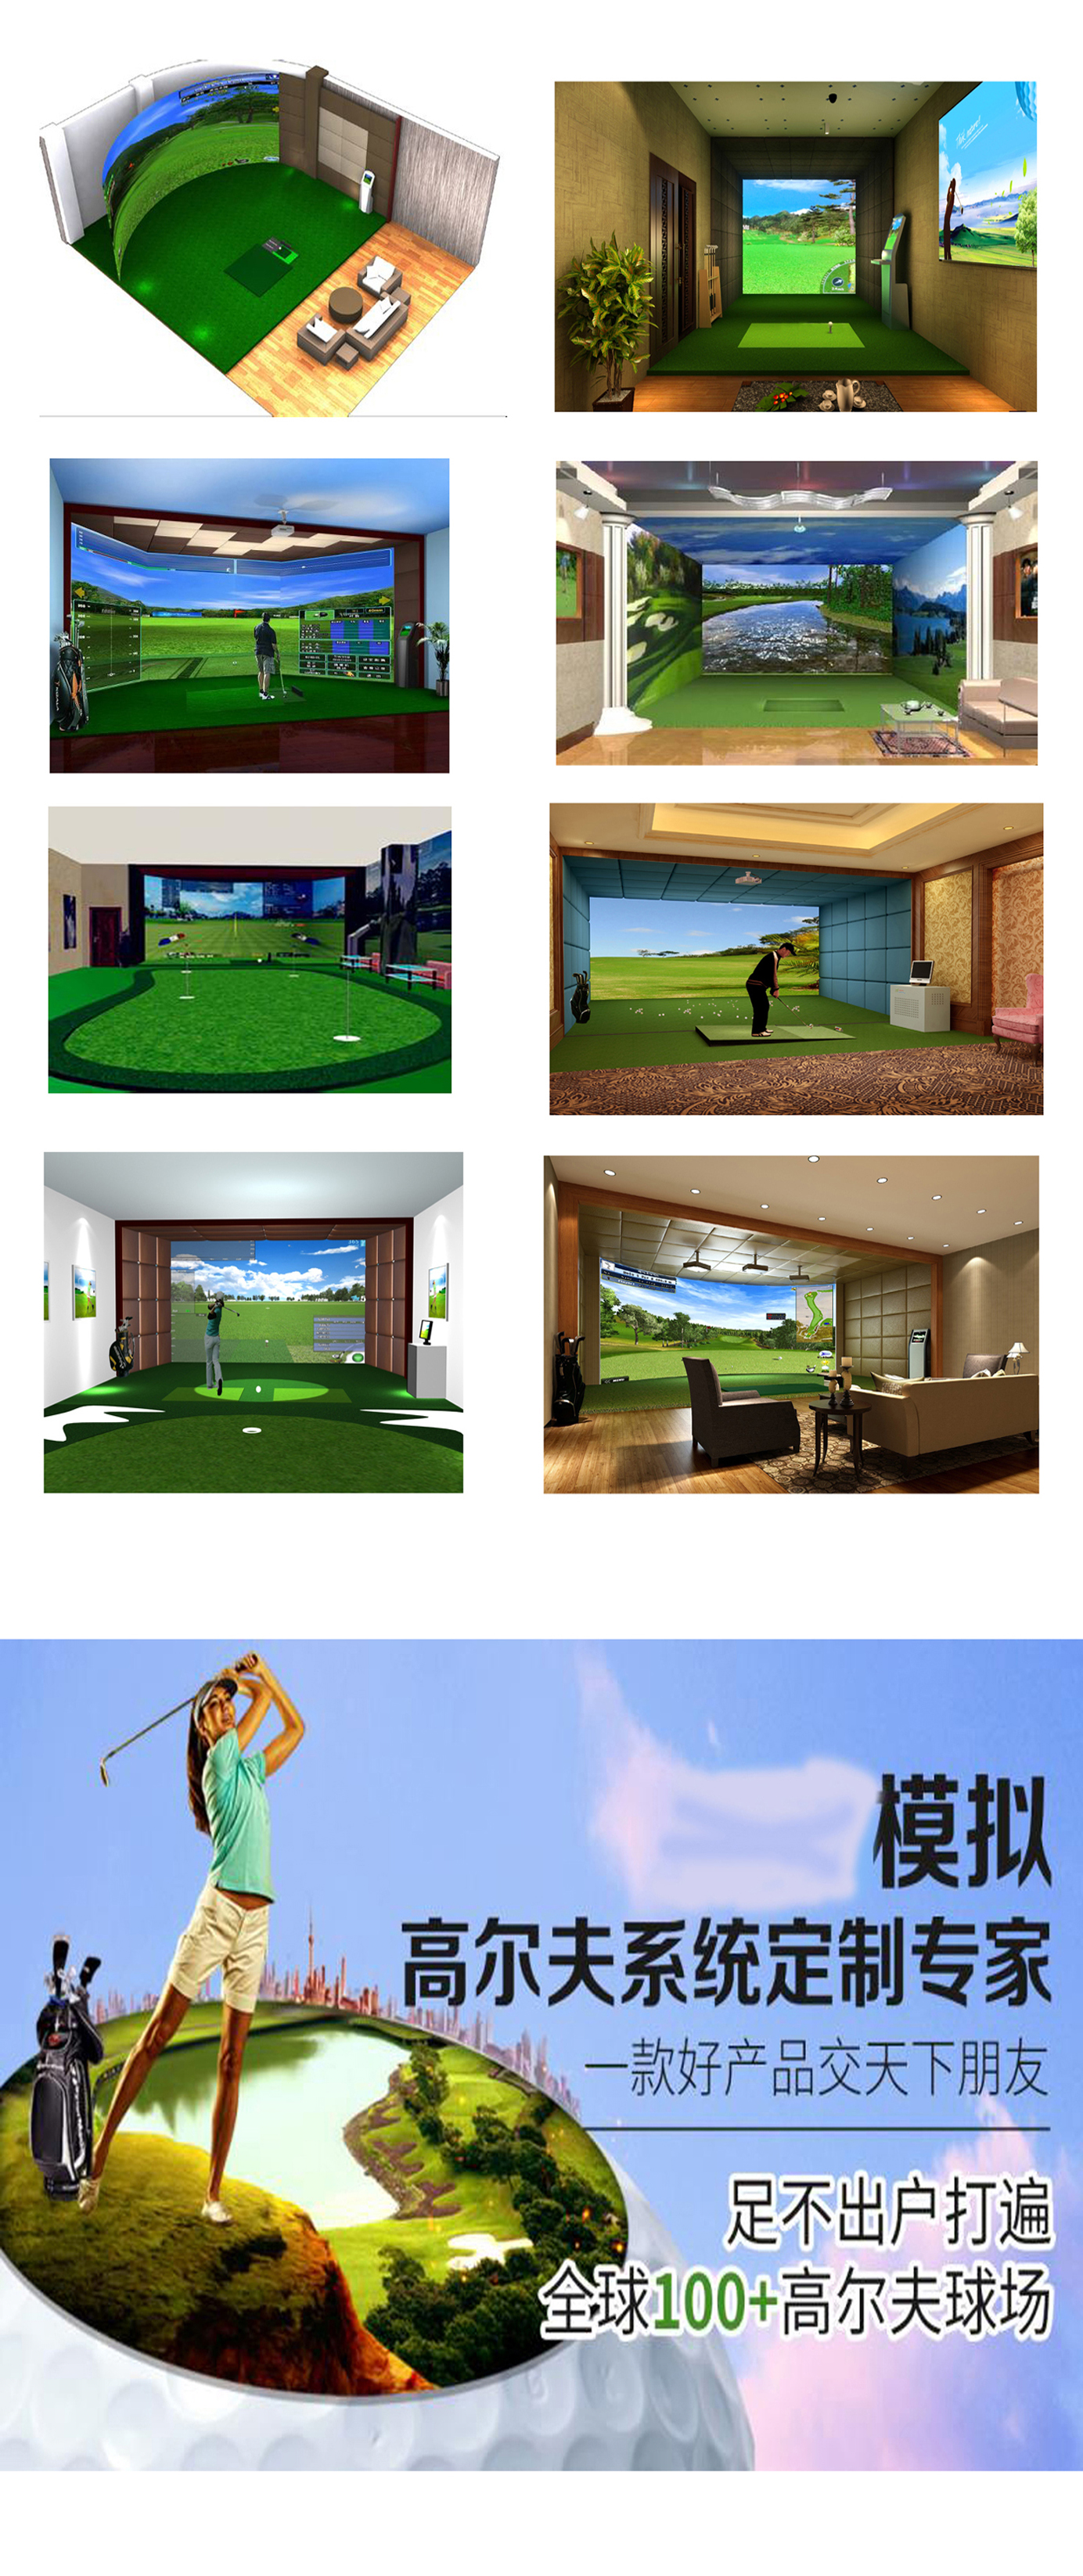 高尔夫模拟设备软件 2.jpg